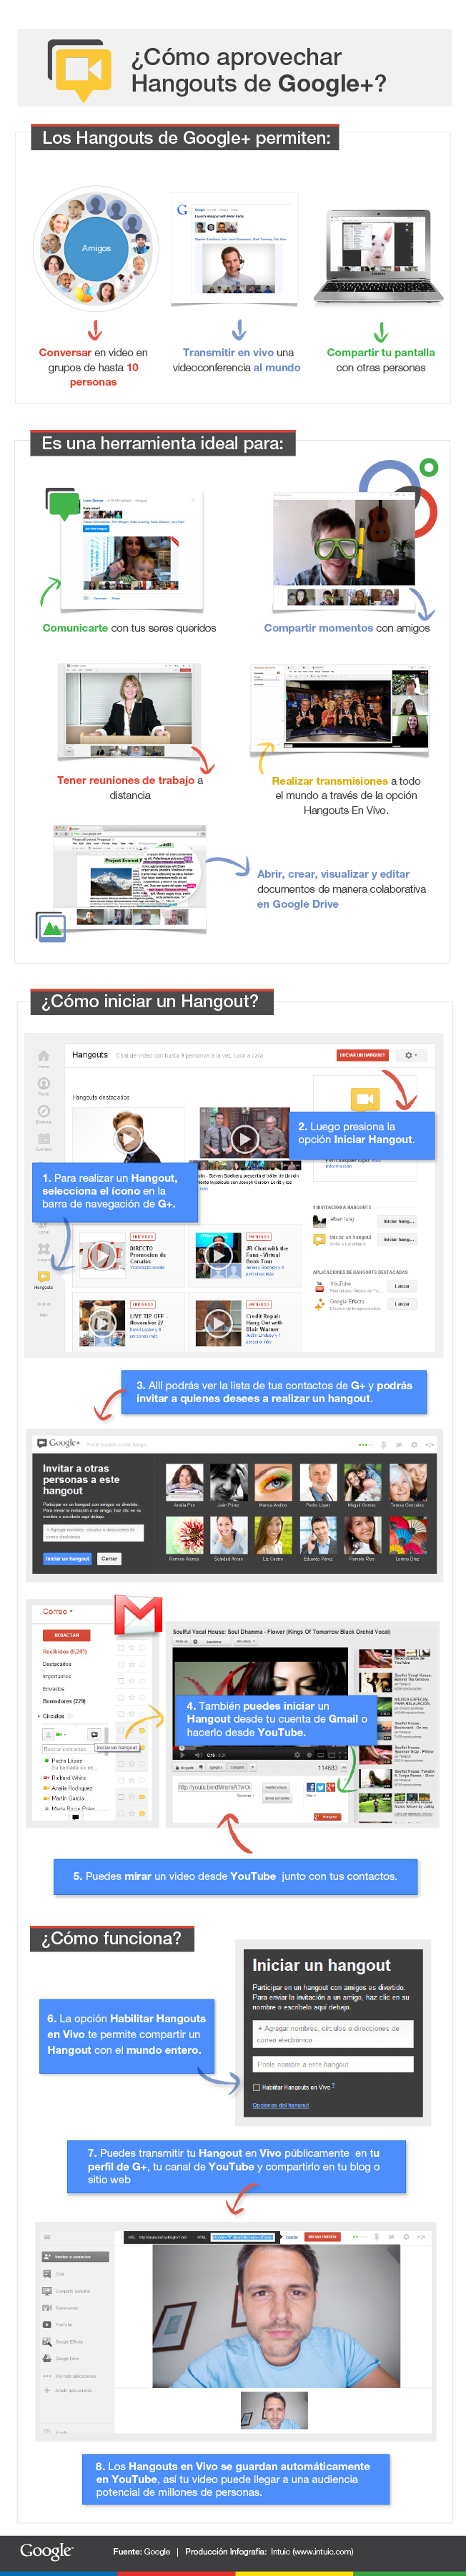 FINAL - Cómo aprovechar Hangouts de Google+ - Español 09.01.13 copy